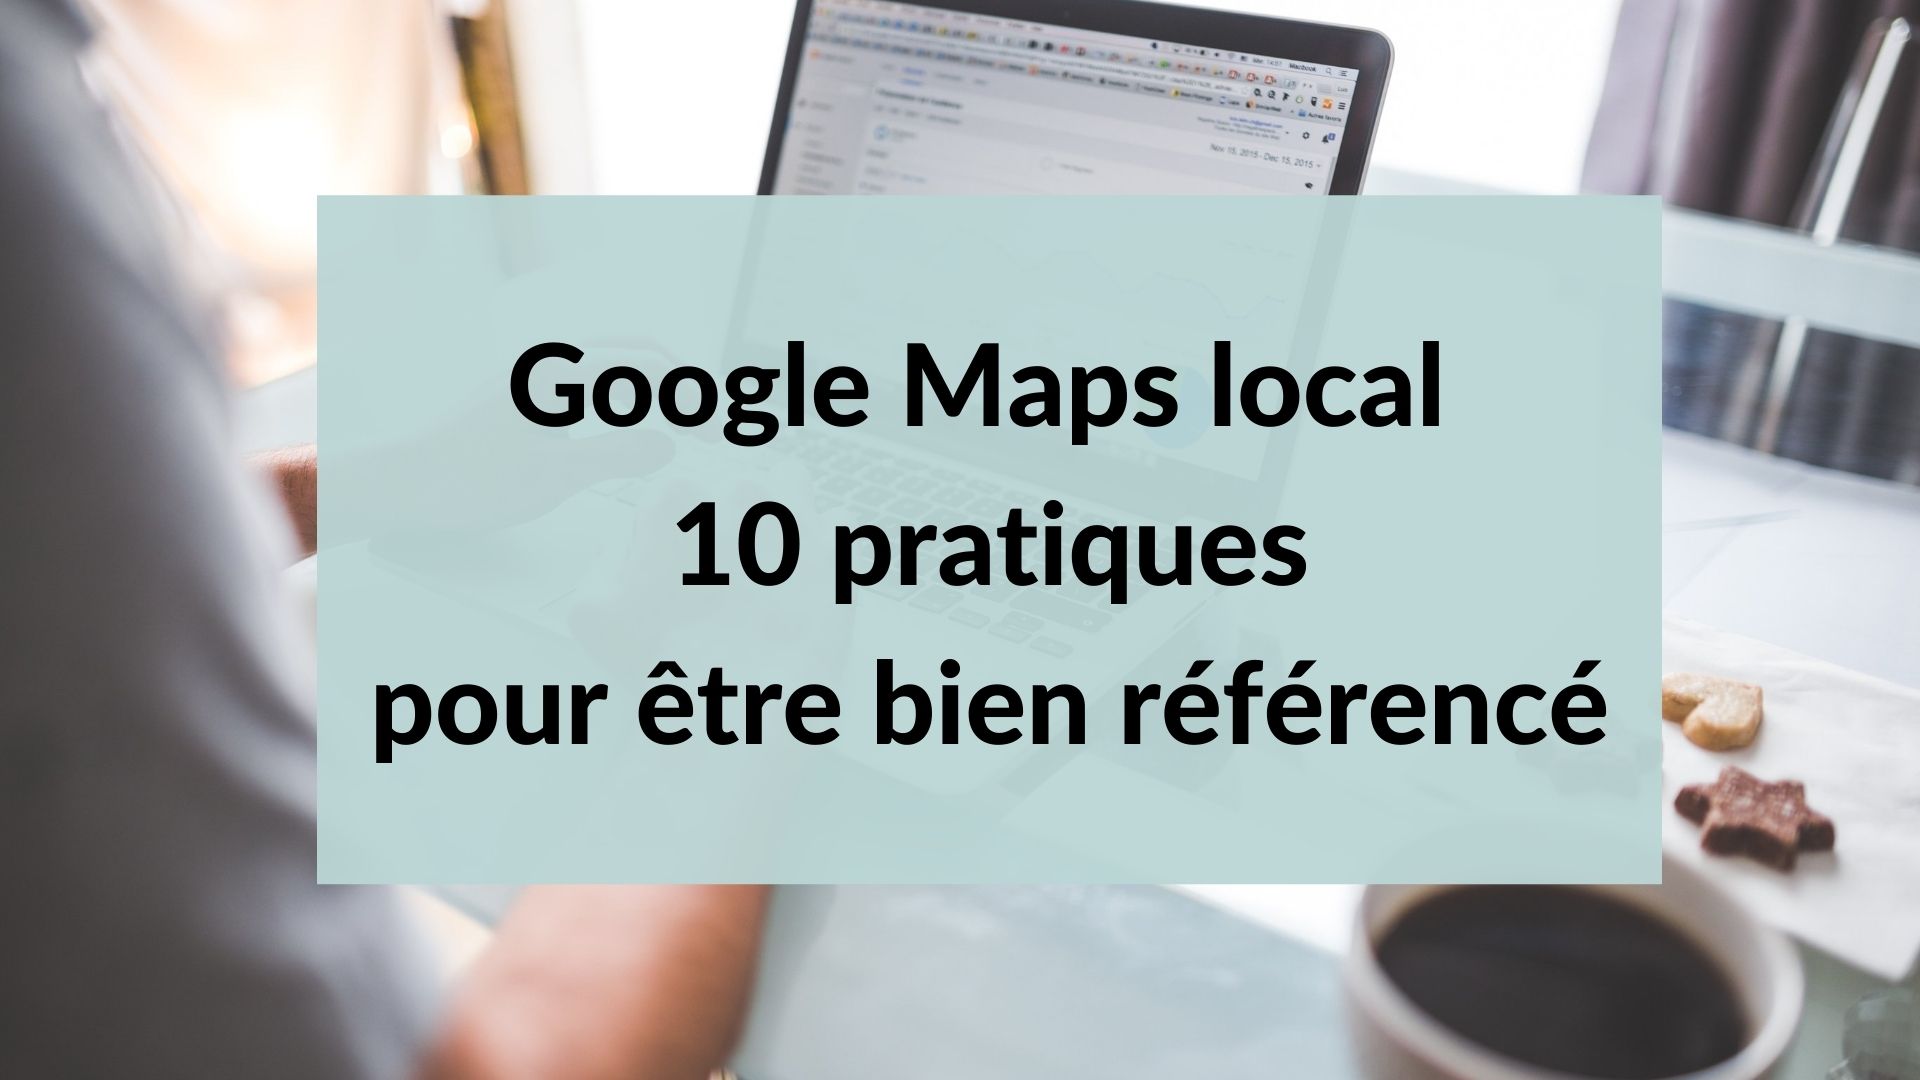 Google Maps local: 10 pratiques pour être bien référencé